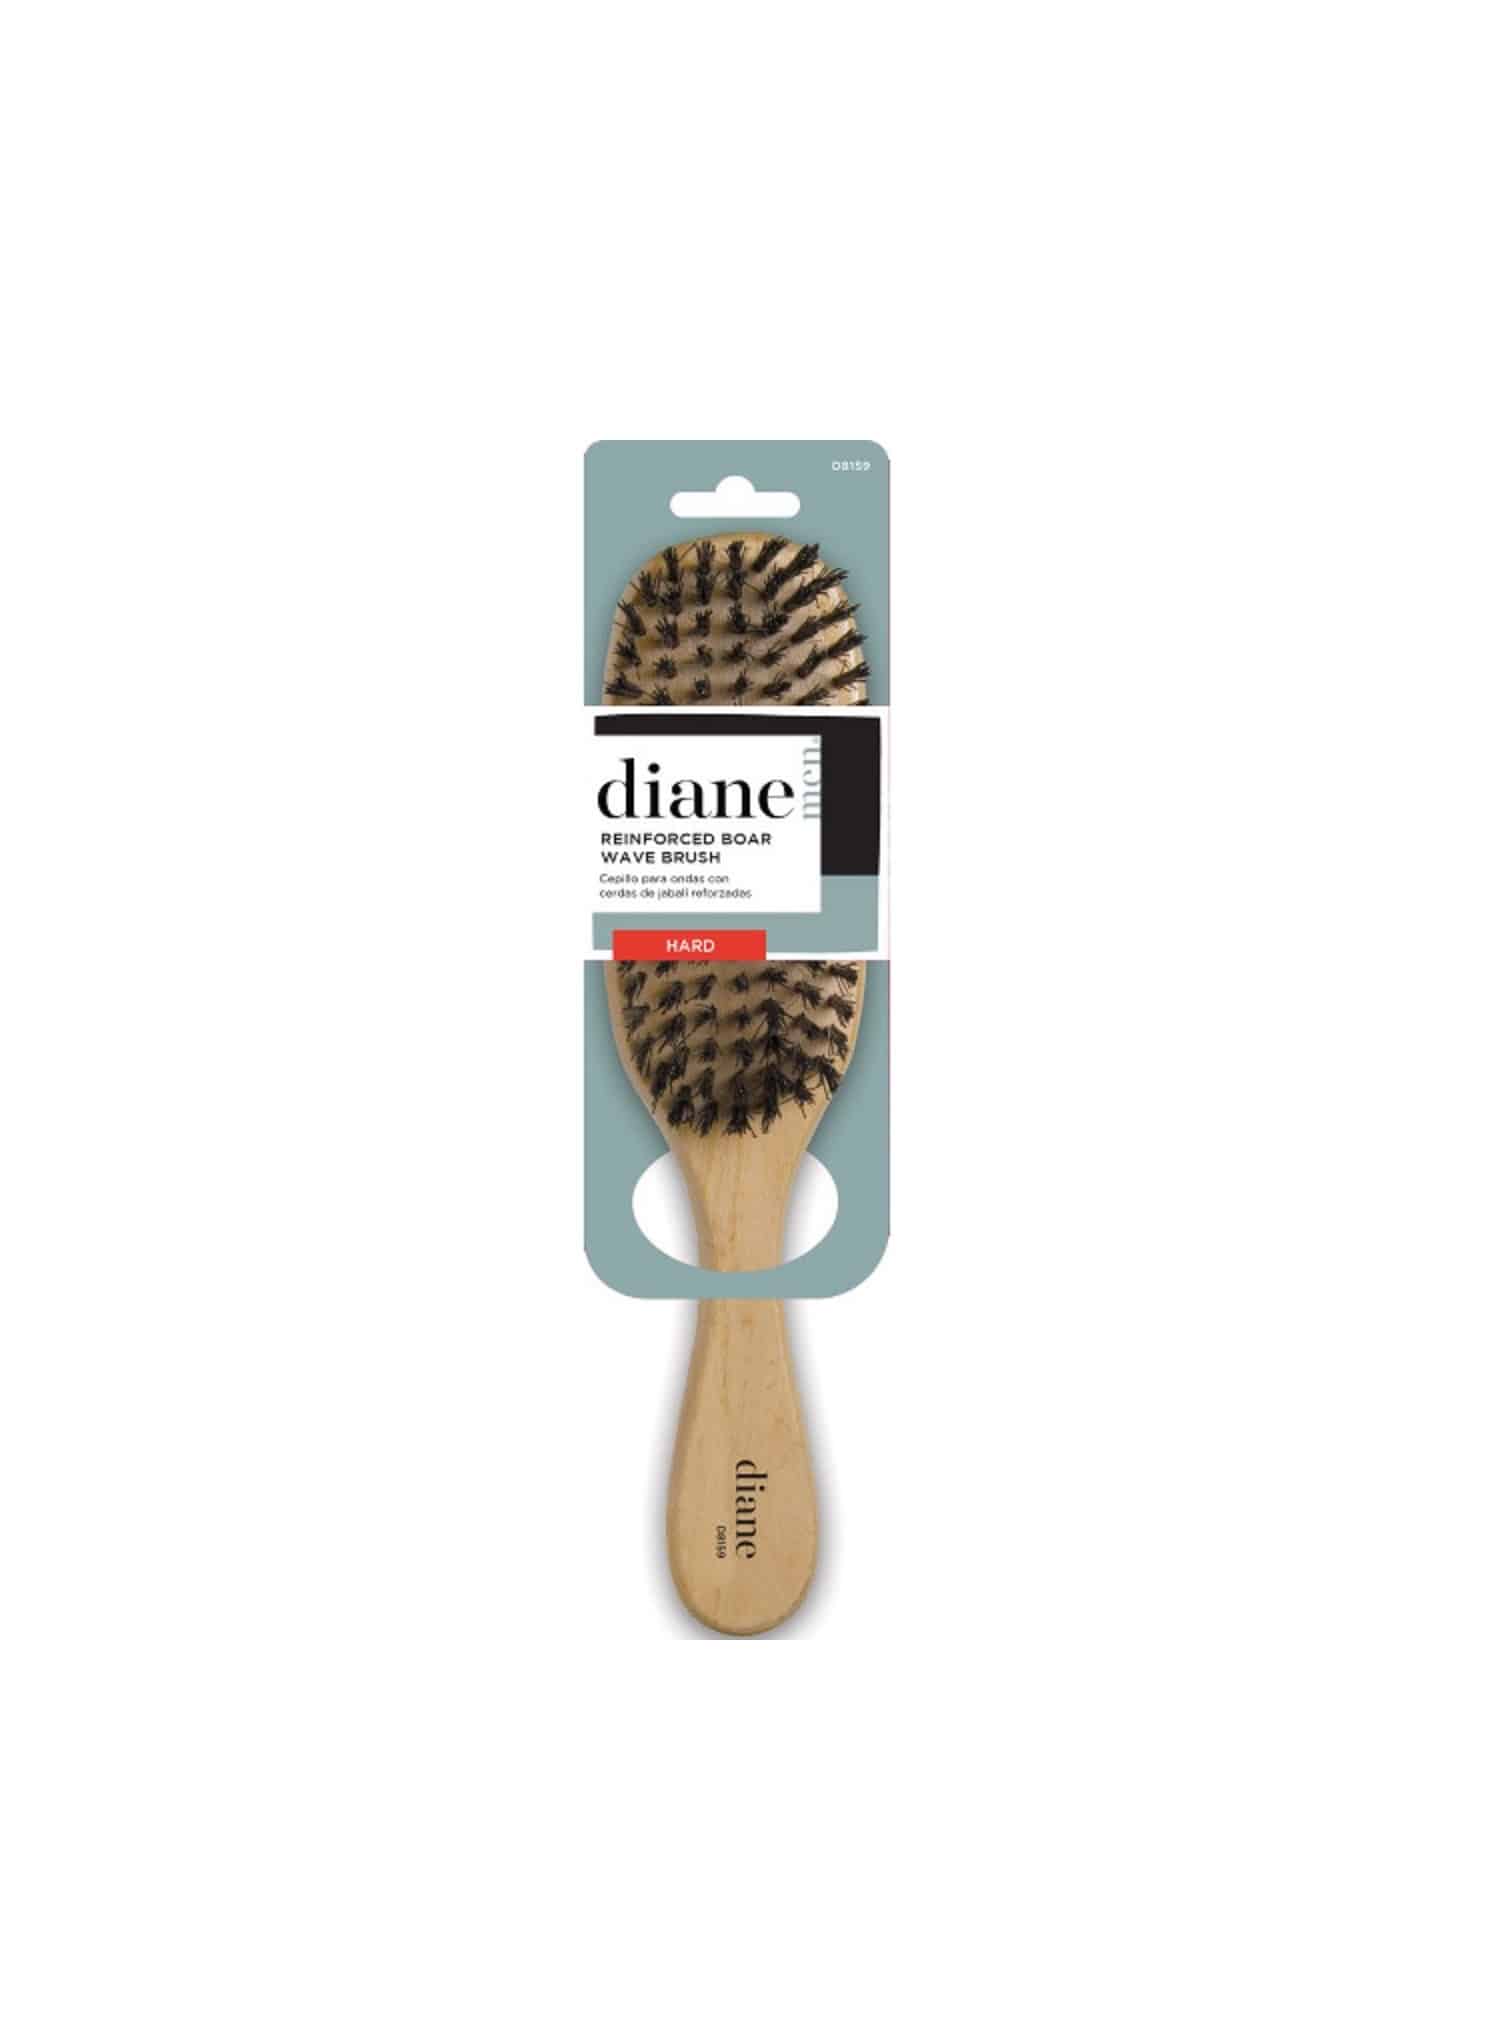 Diane 9 Hard Wave Brush